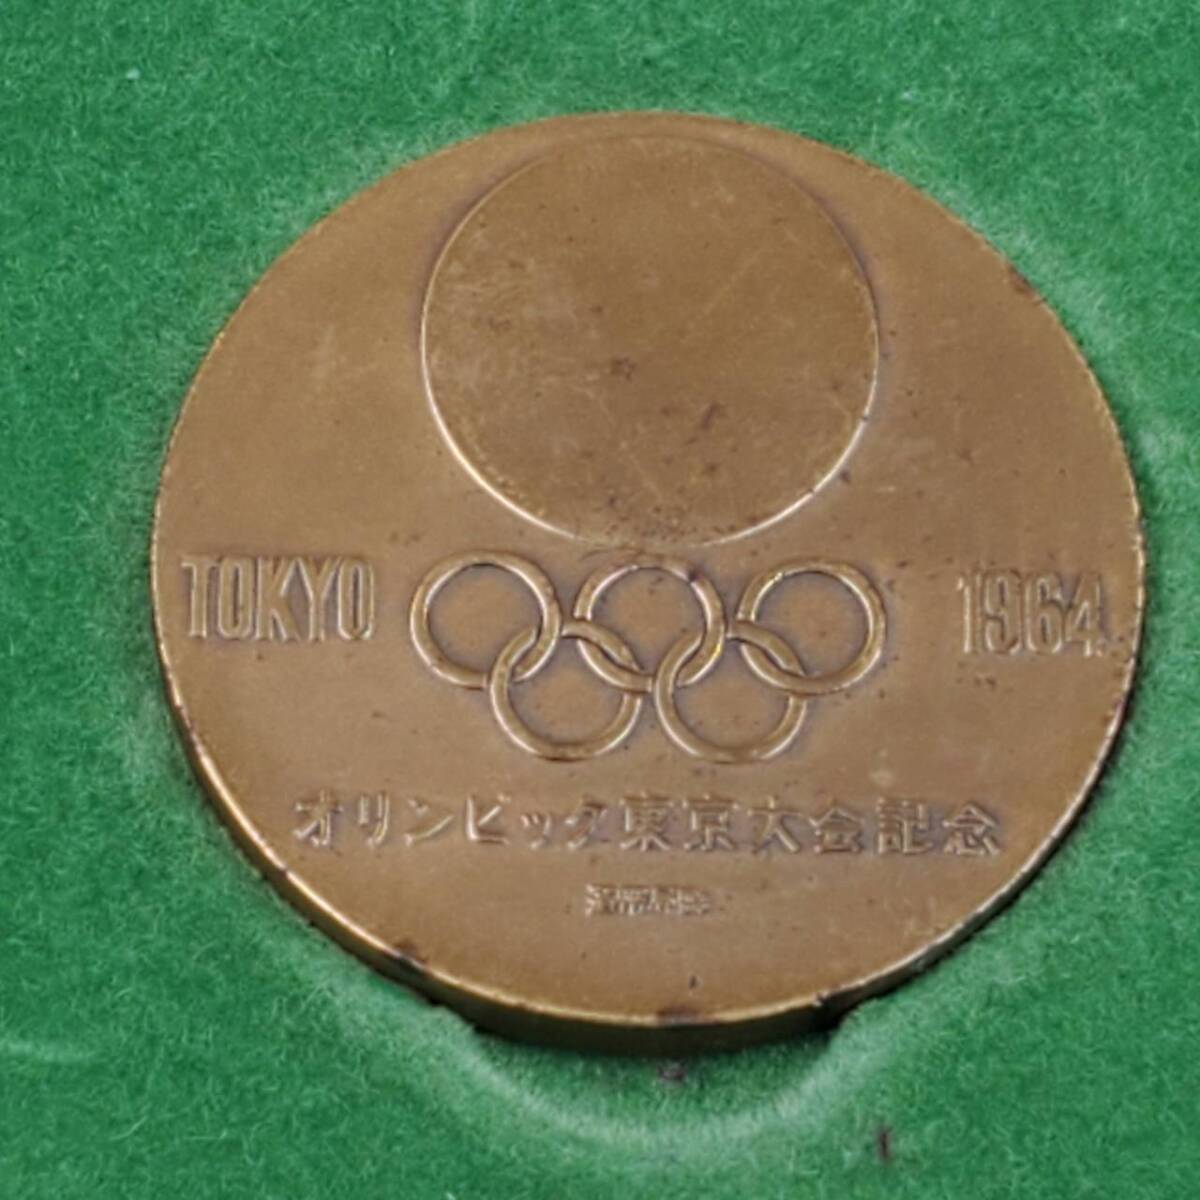 #8863 五輪 オリンピック 記念メダル まとめ 総6枚 1964年 東京オリンピック 4枚 /1980年 モスクワオリンピック 2枚 銅 丹銅 IOC _画像4